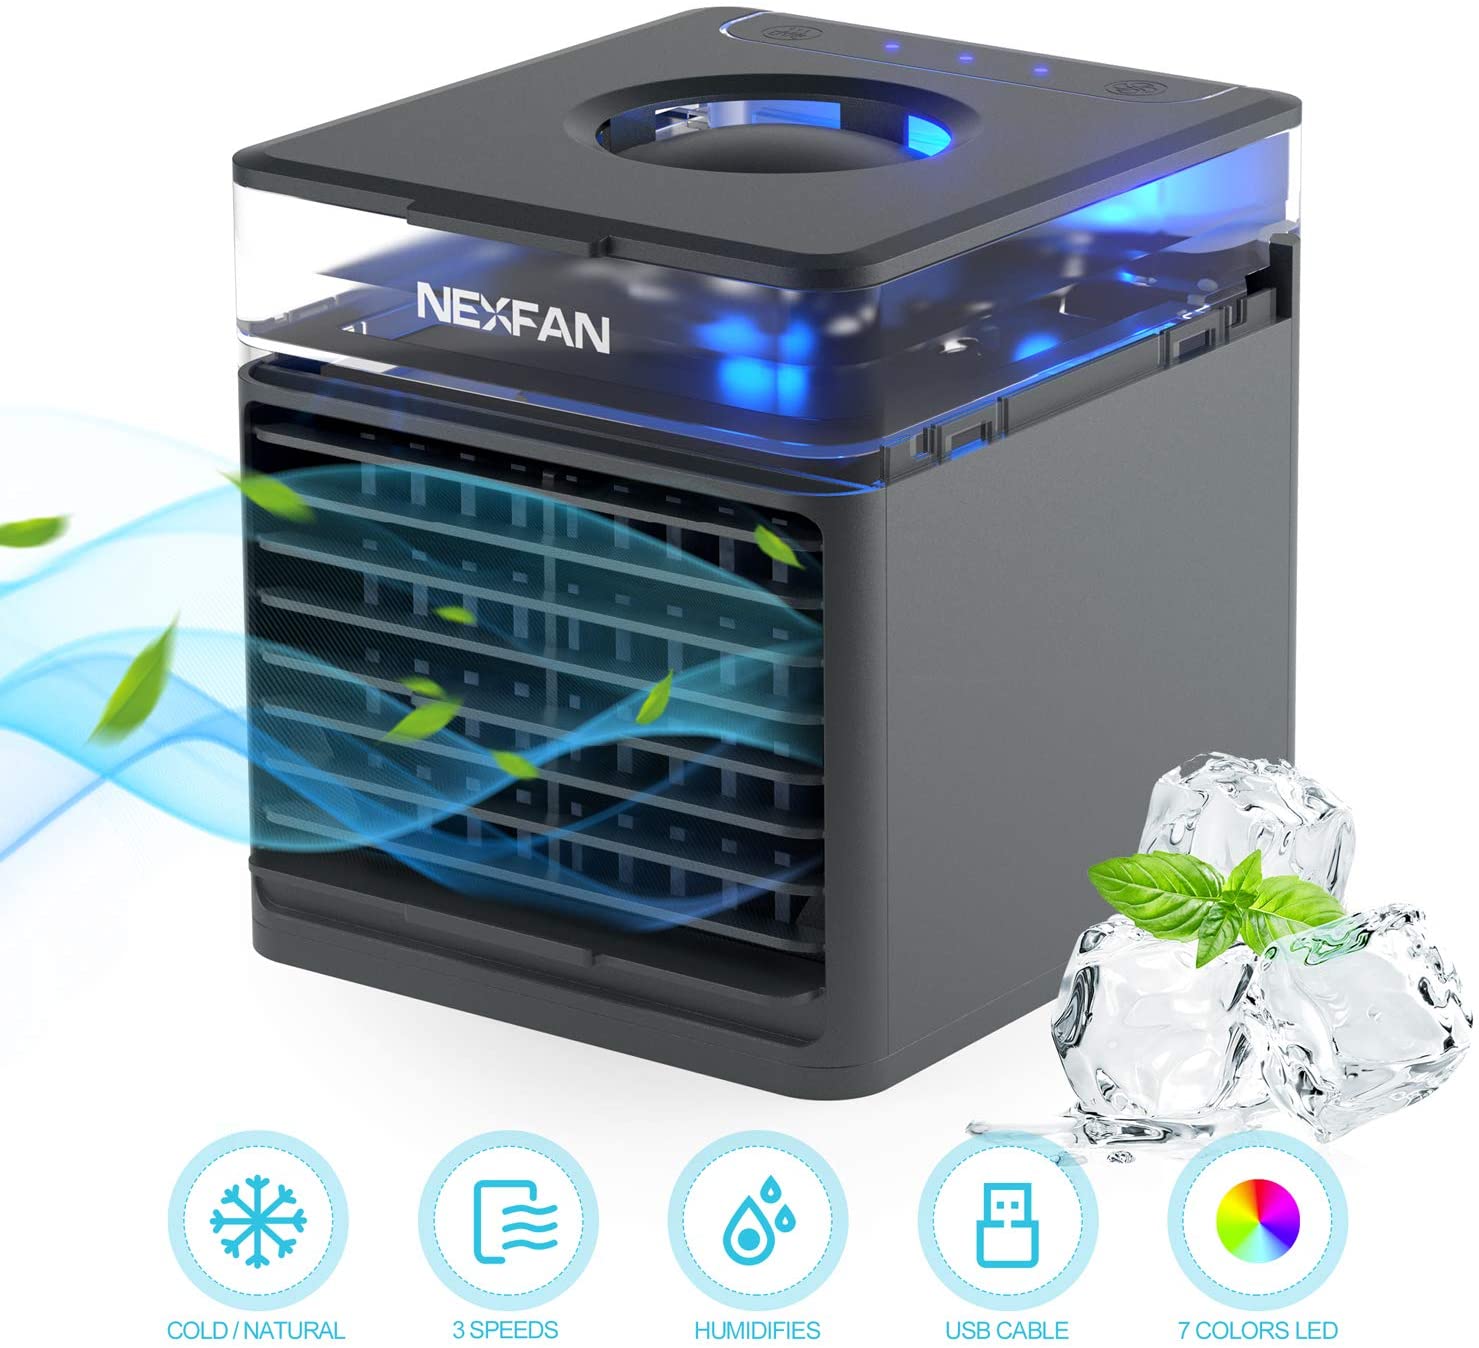 NexFan Taşınabilir El Çok Fonksiyonlu Hızlı Soğutma Klima Fanı Arındırıcı Hava Koku Ortadan Kaldırır Üç Modlu USB Şarj Standart Sürüm Ofis Ev İçin - Siyah